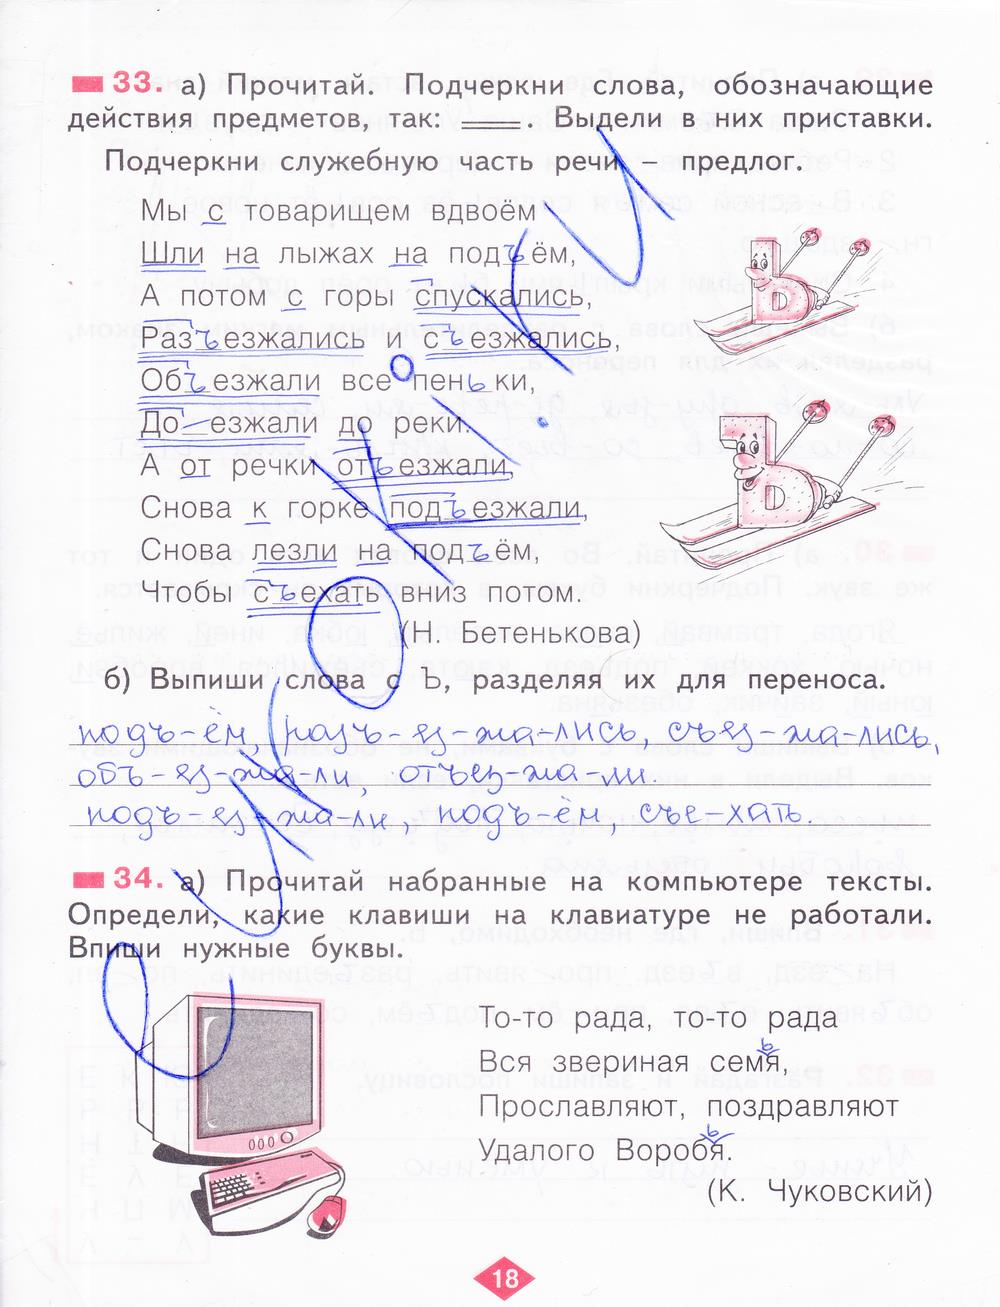 гдз 2 класс рабочая тетрадь часть 2 страница 18 русский язык Яковлева